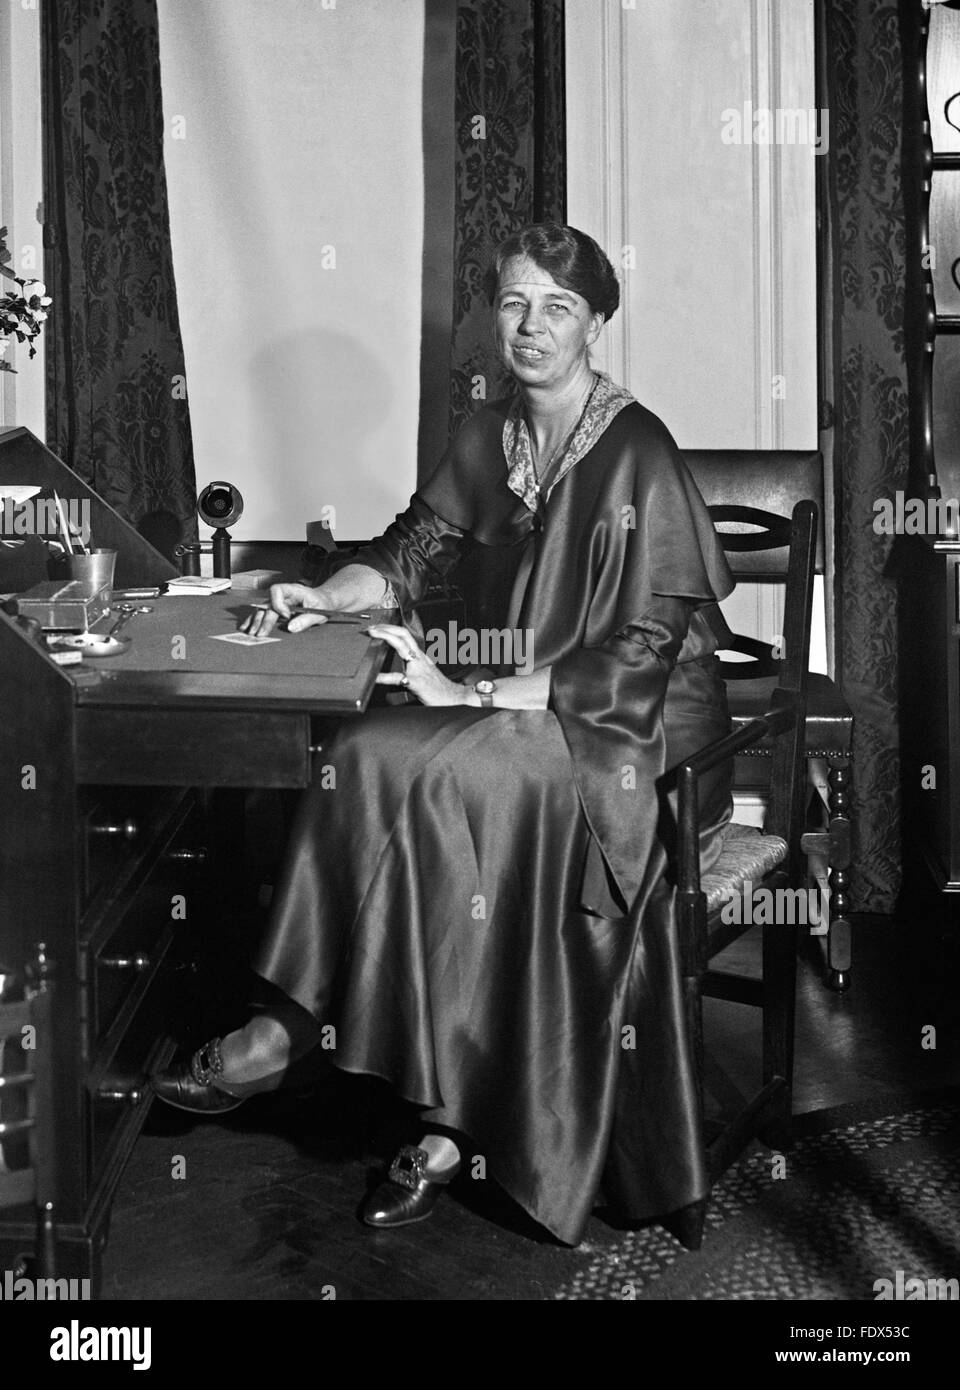 Eleanor Roosevelt (1884-1962), épouse de Franklin D Roosevelt, le 32e Président des Etats-Unis. Portrait par Harris et Ewing, c.1932 Banque D'Images